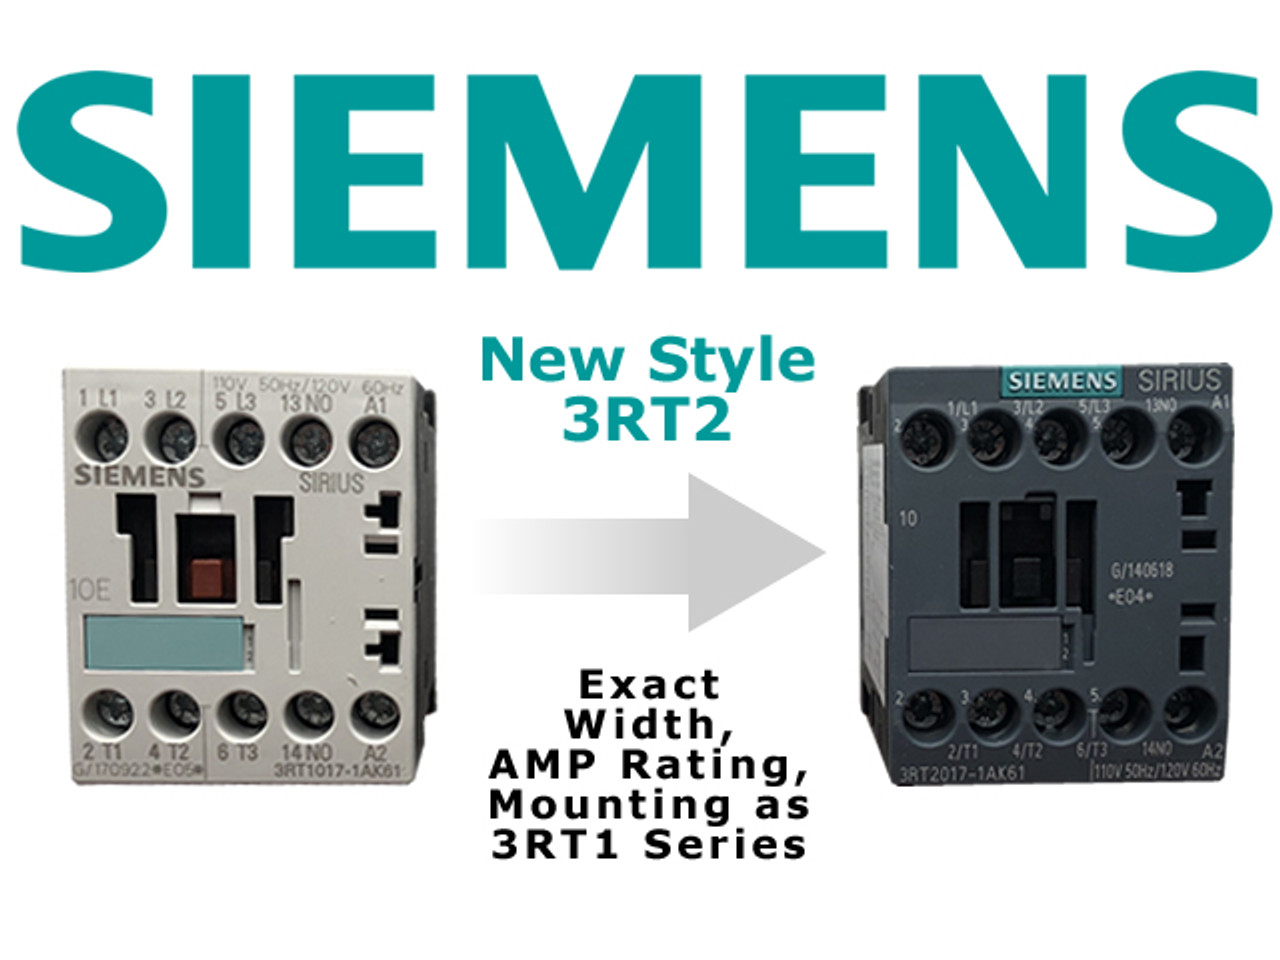 Siemens 3RT2015-1AV62 comparison